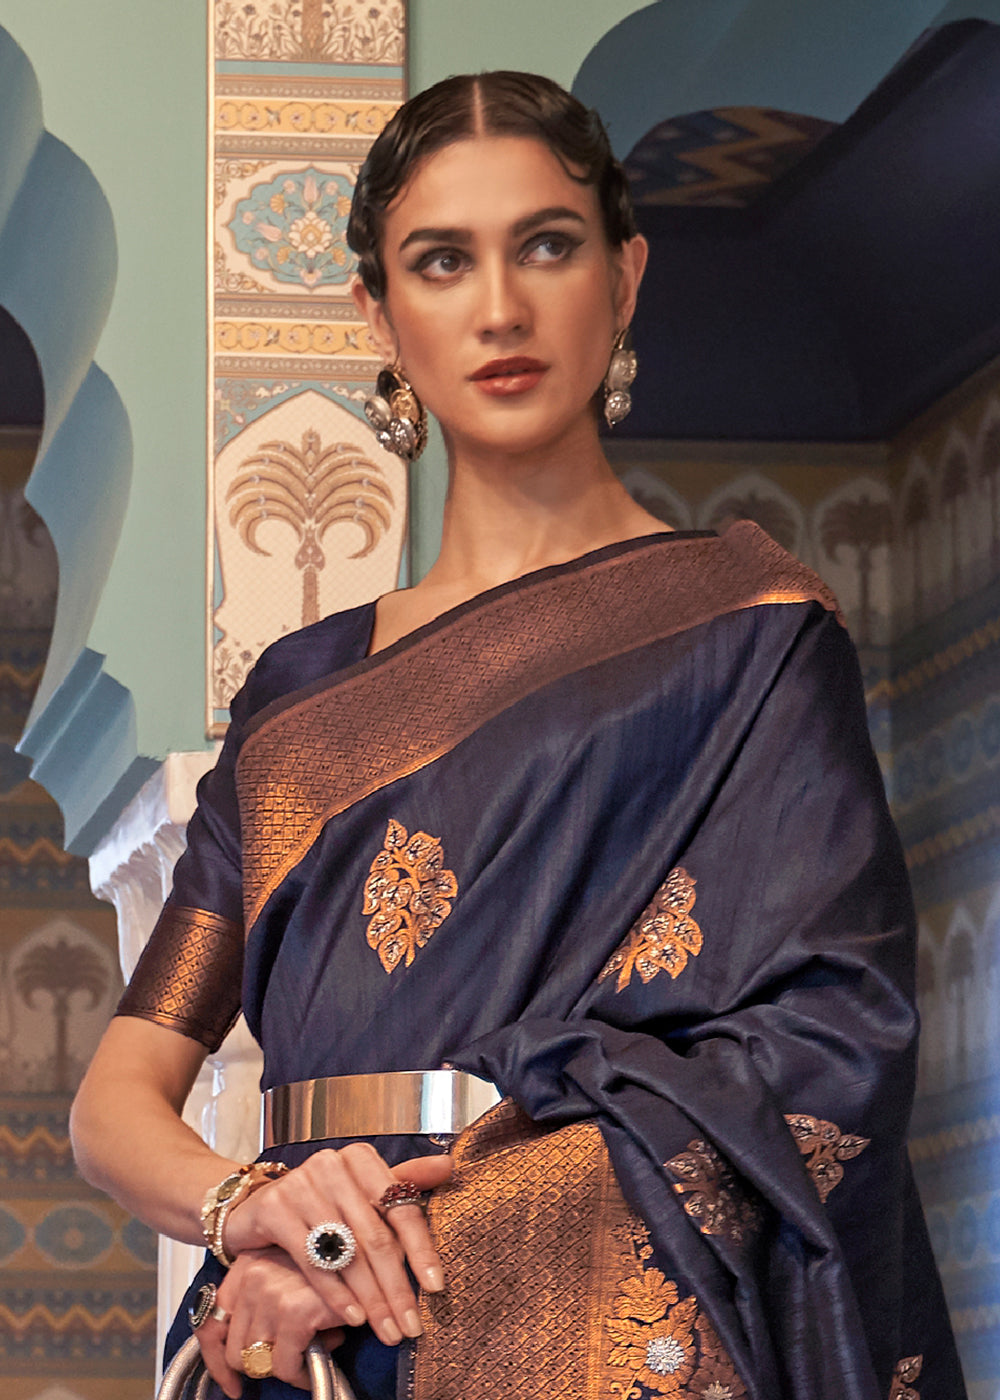 Buy Now Navy Blue Tussar Banarasi Silk Designer Saree Online in USA, UK, Canada & Worldwide at Empress Clothing. 